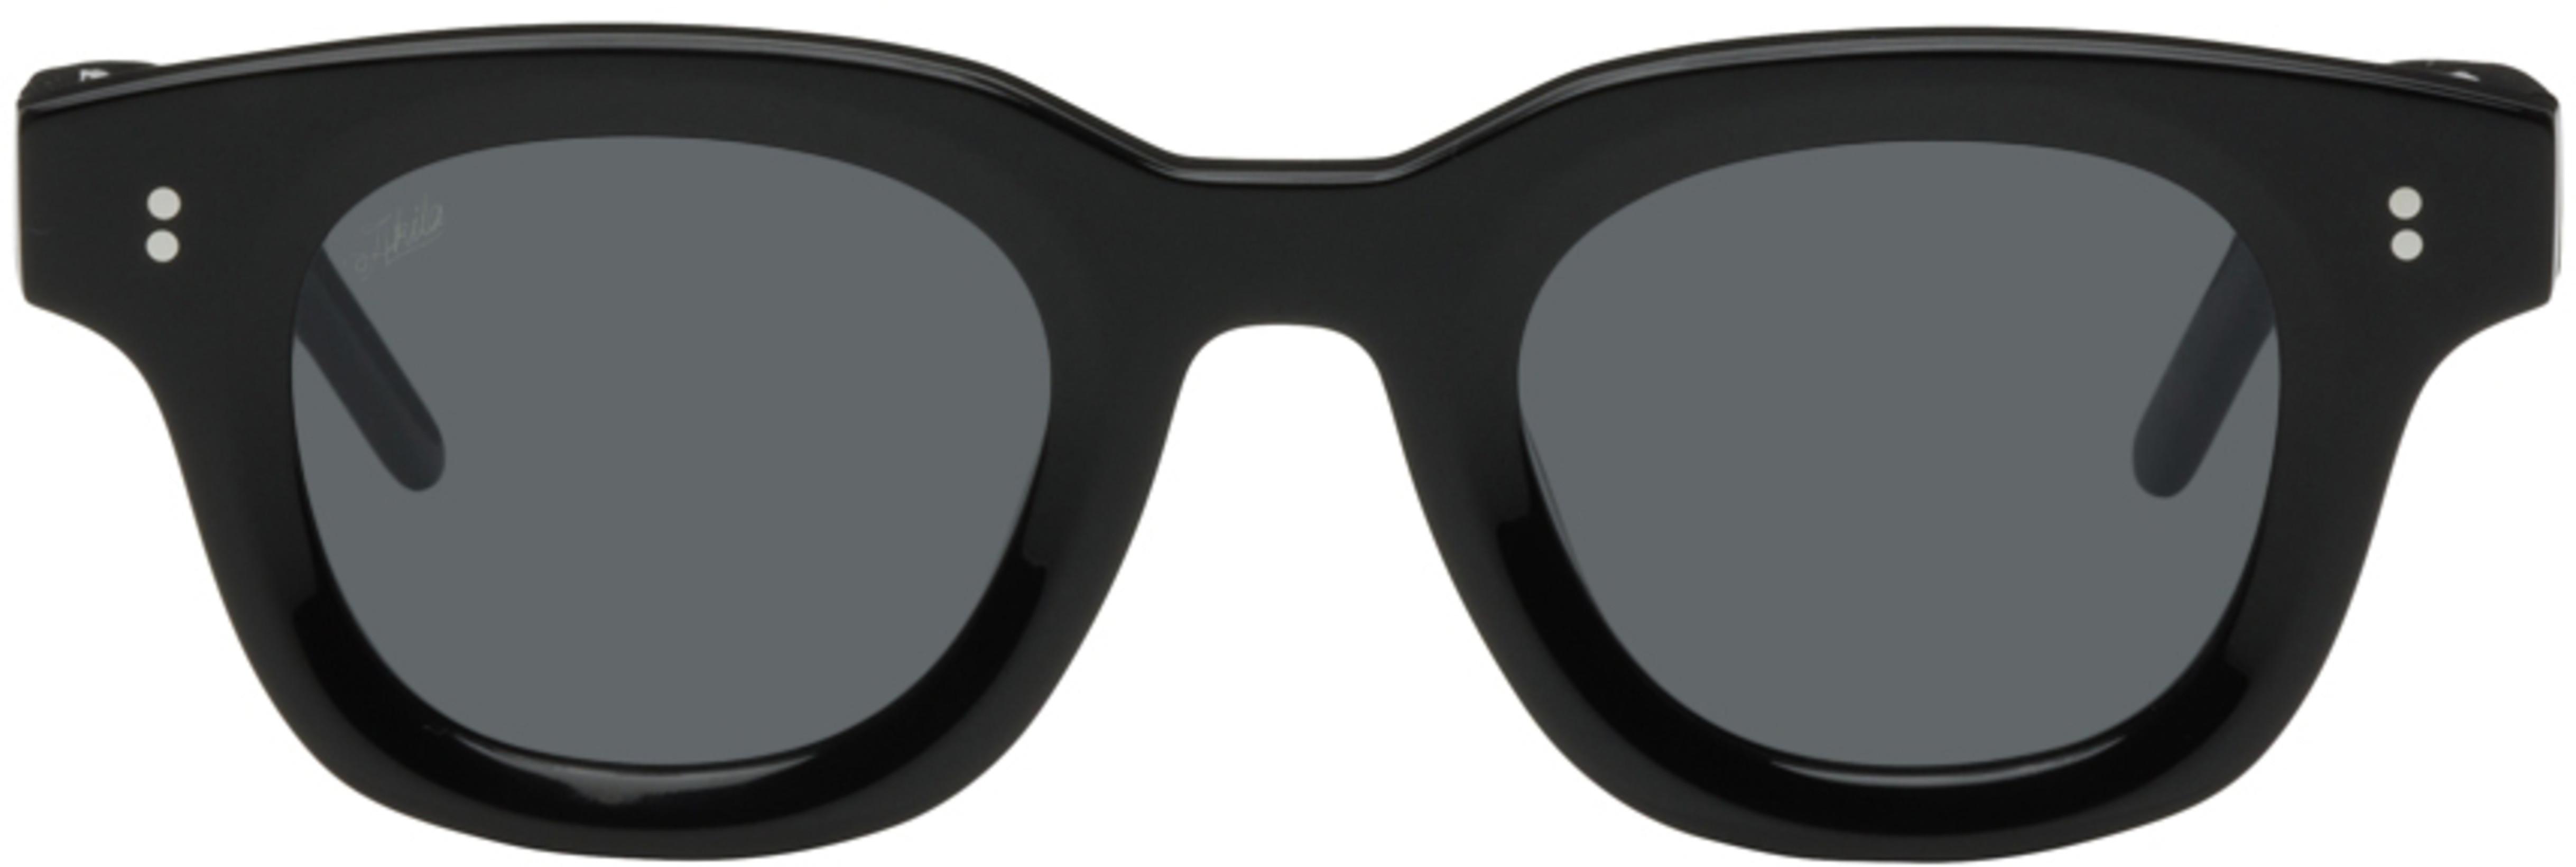 Black Apollo Sunglasses by AKILA